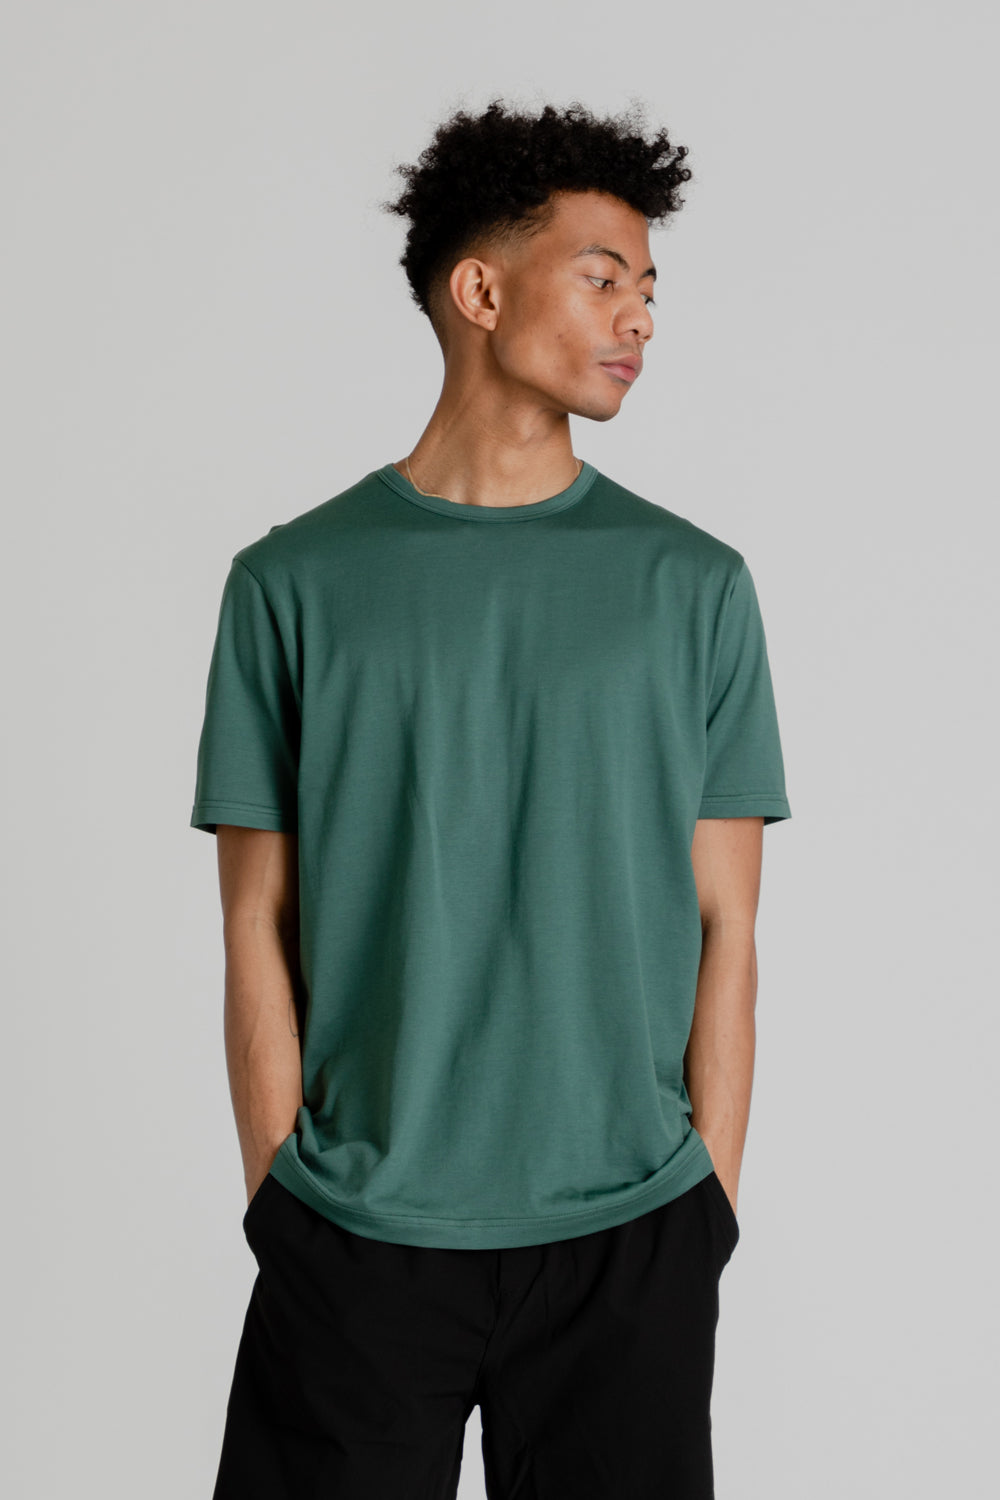 Sunspel Classic T-Shirt in Deep Green